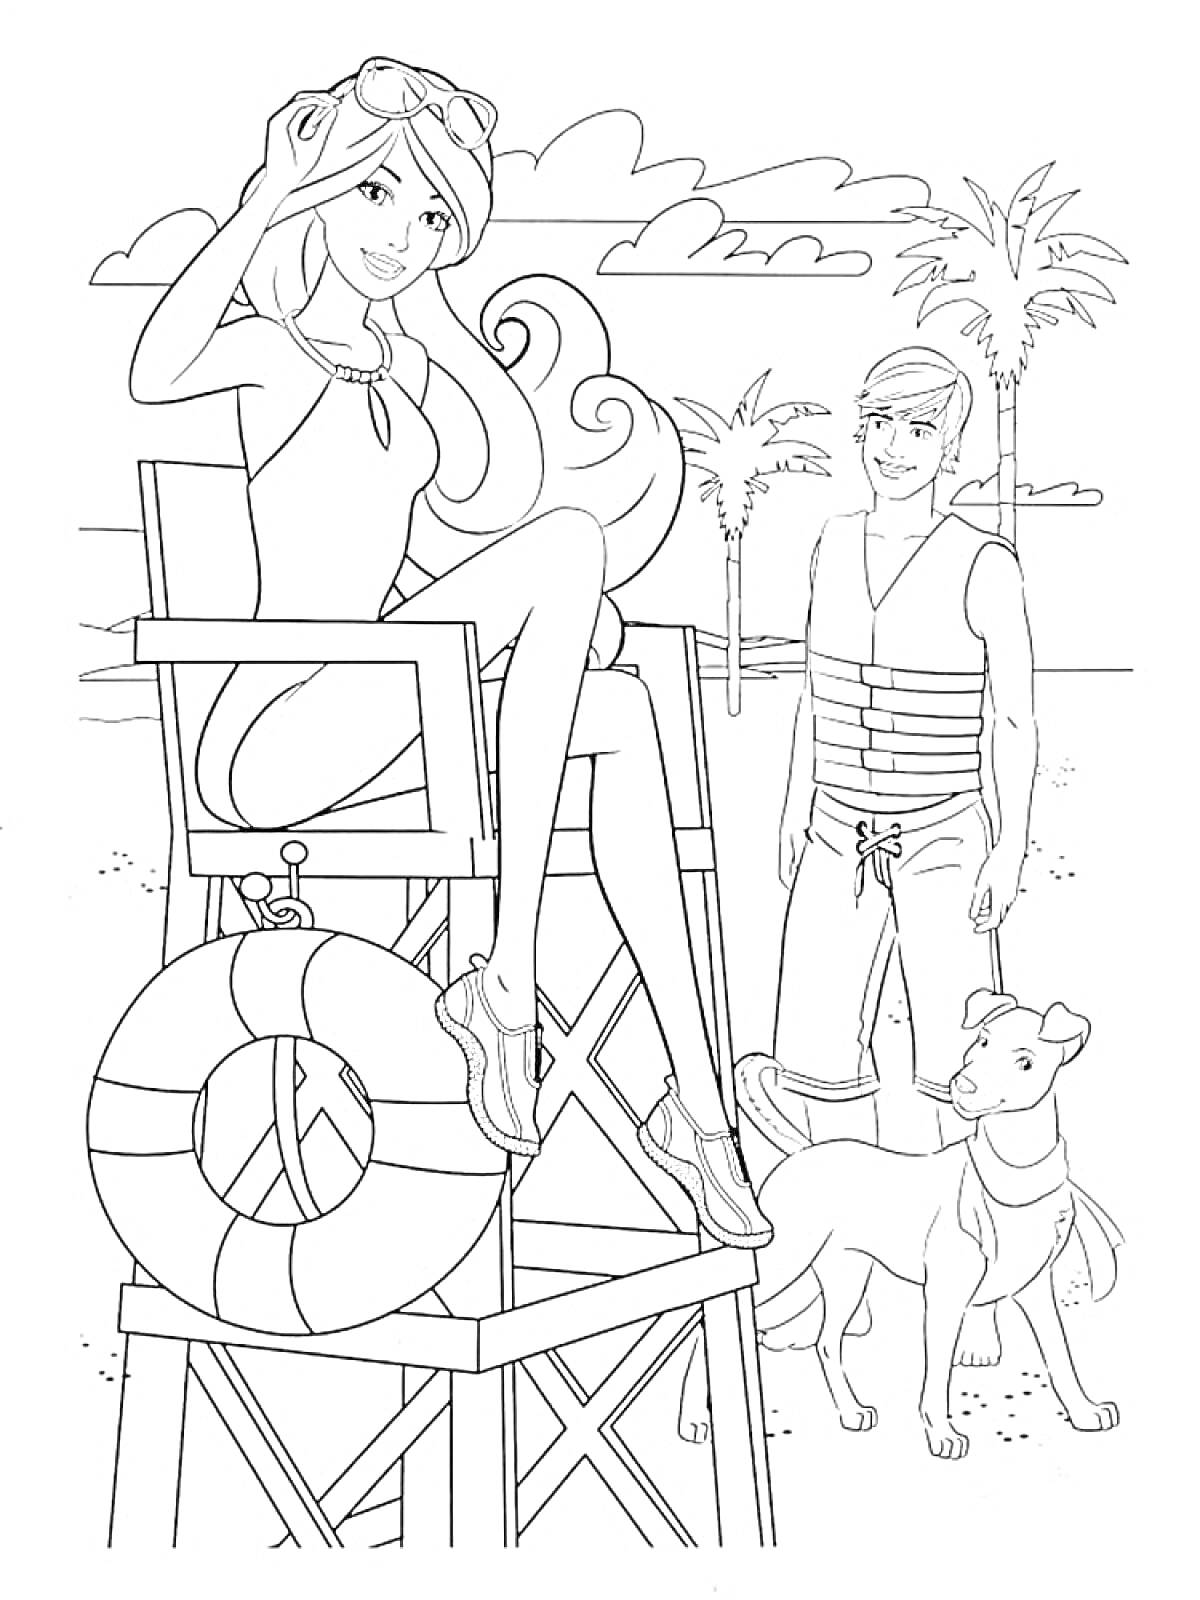 Барби и Кен на пляже с собакой, спасательная вышка, спасательный круг, пальмы и облака